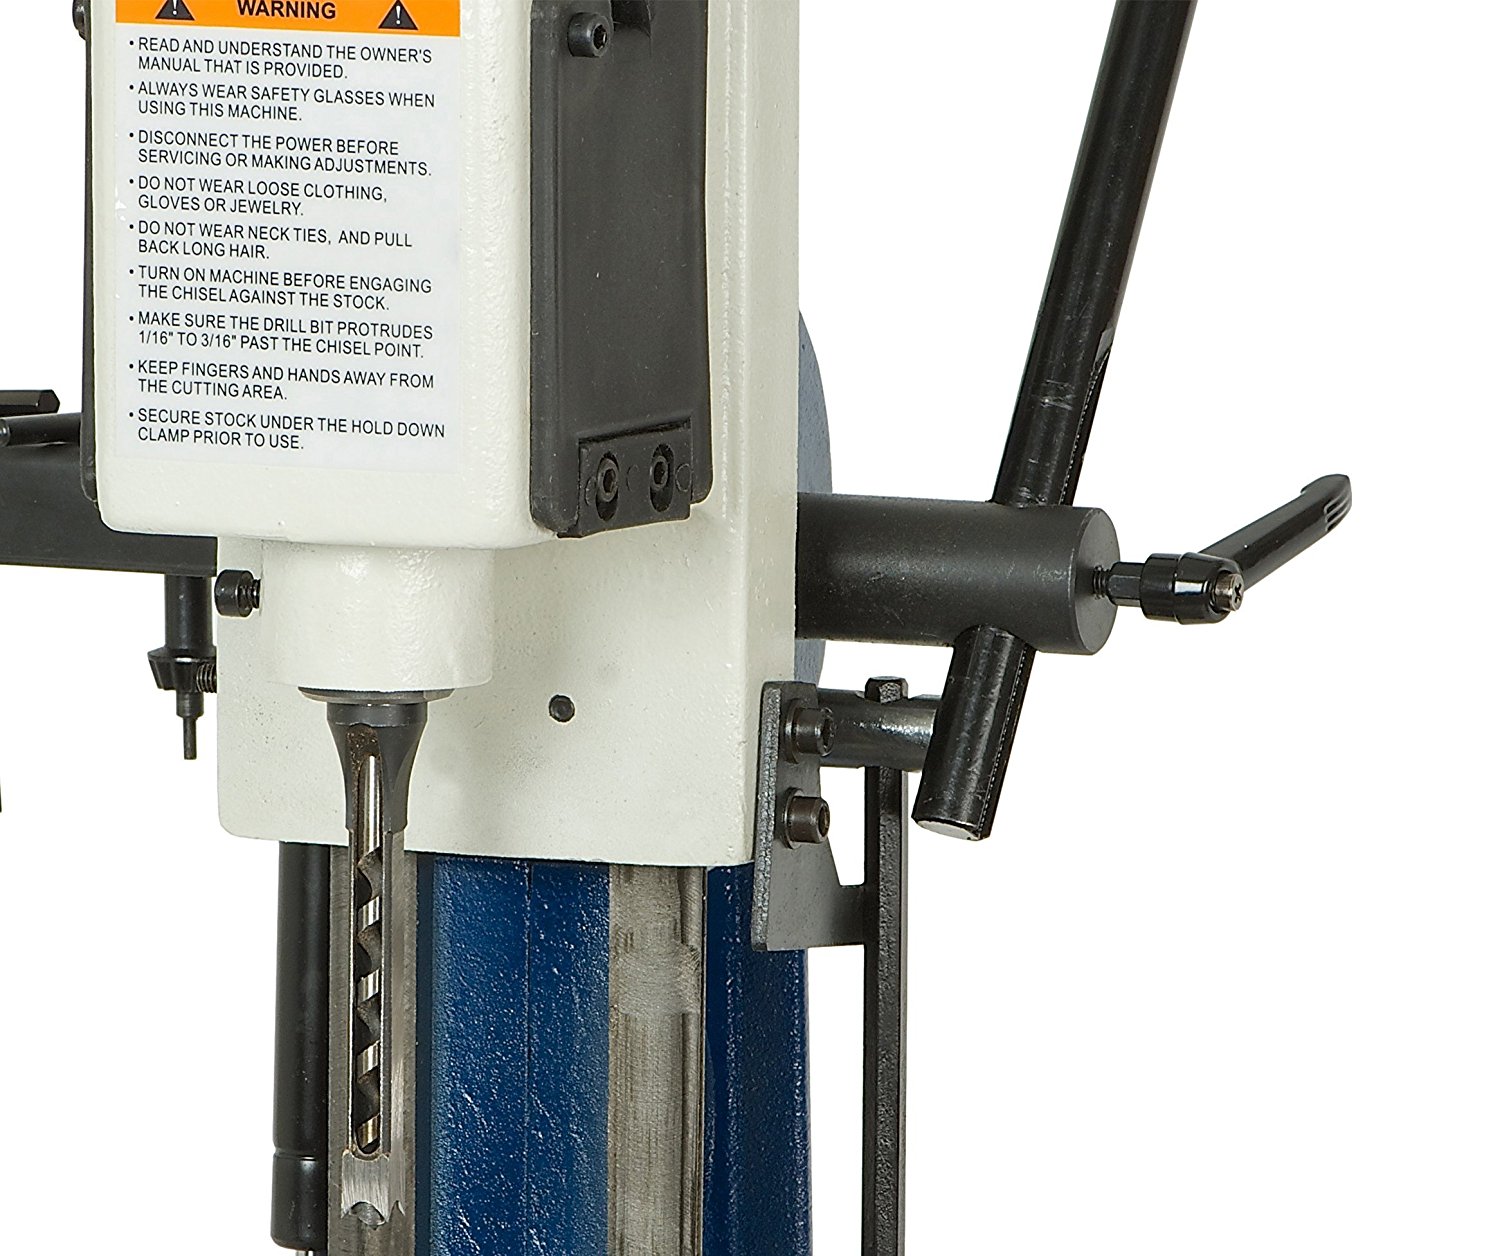 RIKON Power drill press